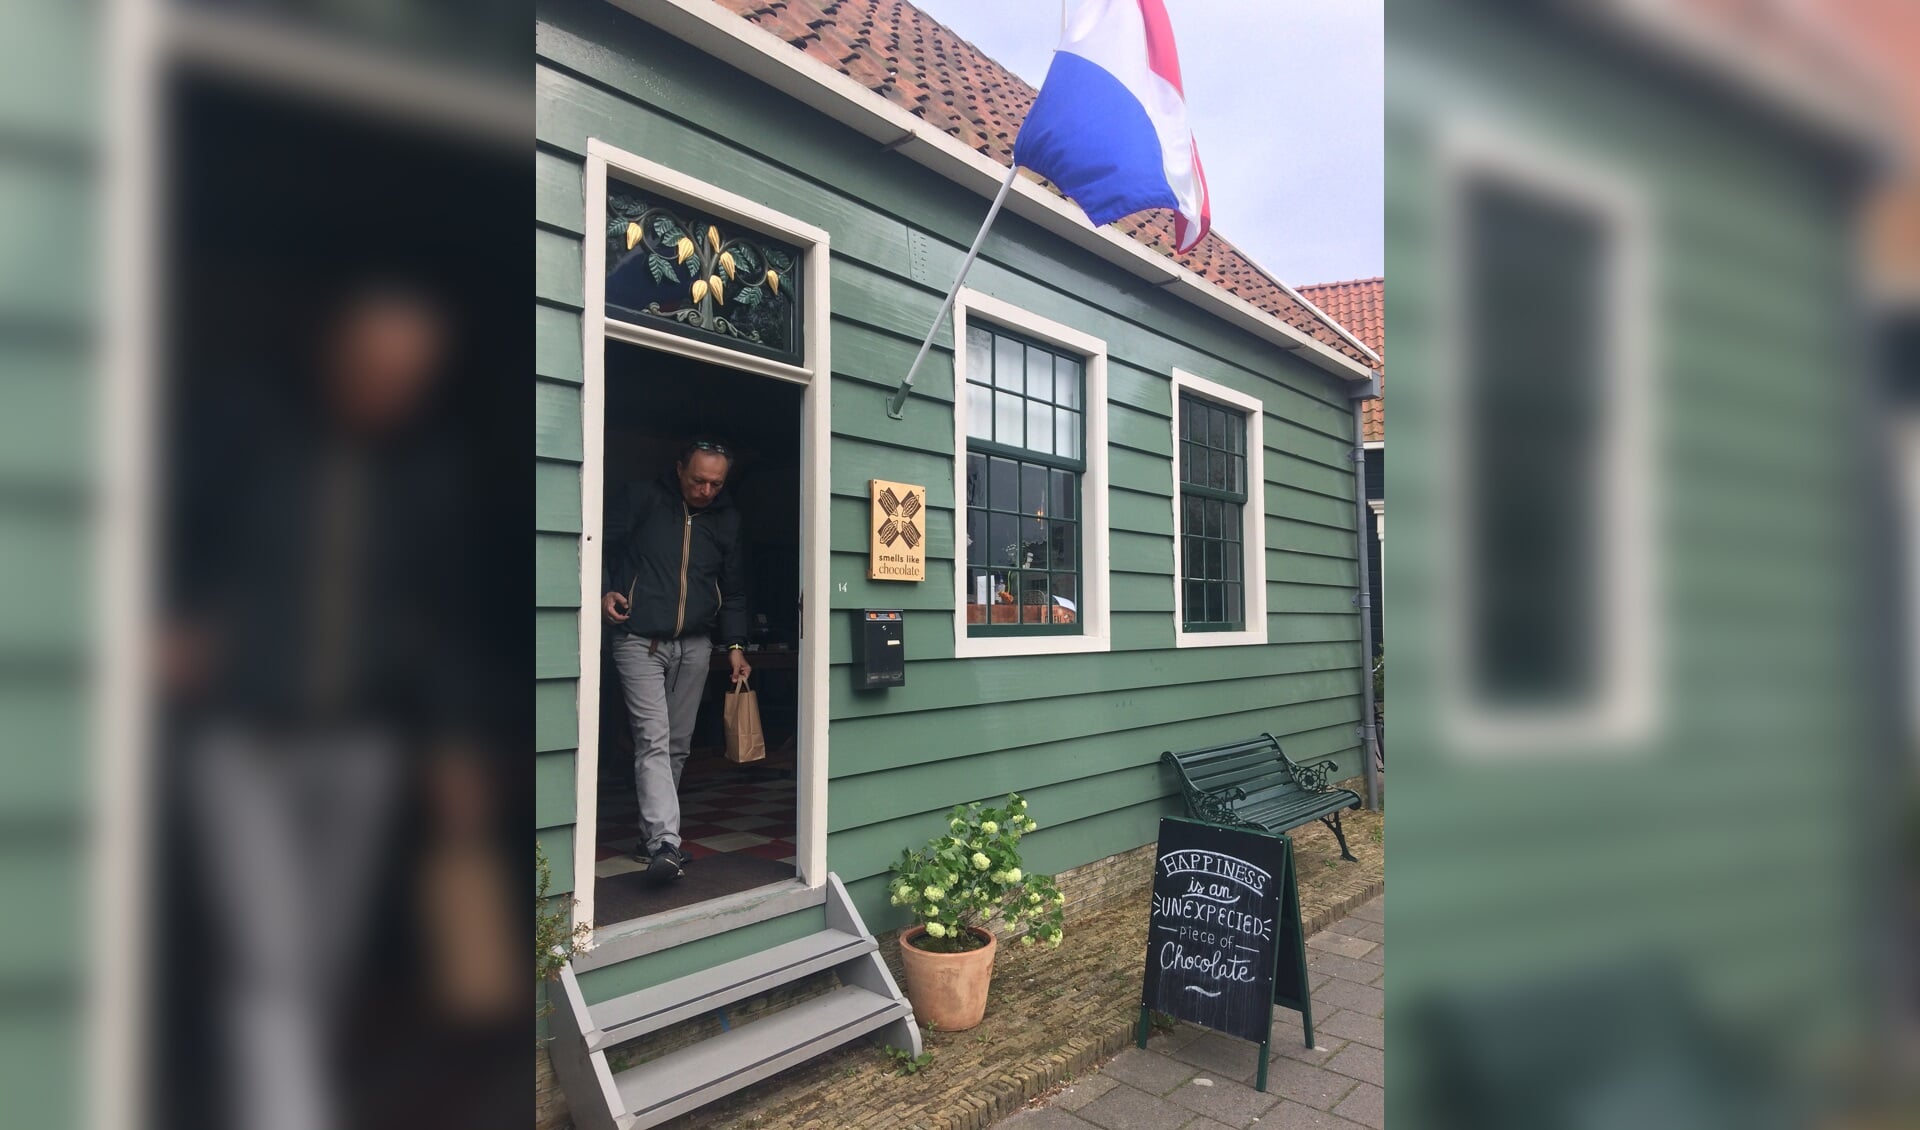 Zaansmakenmaker cacao boutique Smells like Chocolate aan Lagedijk 14 in Zaandijk. (Foto: Yvette van der Does)